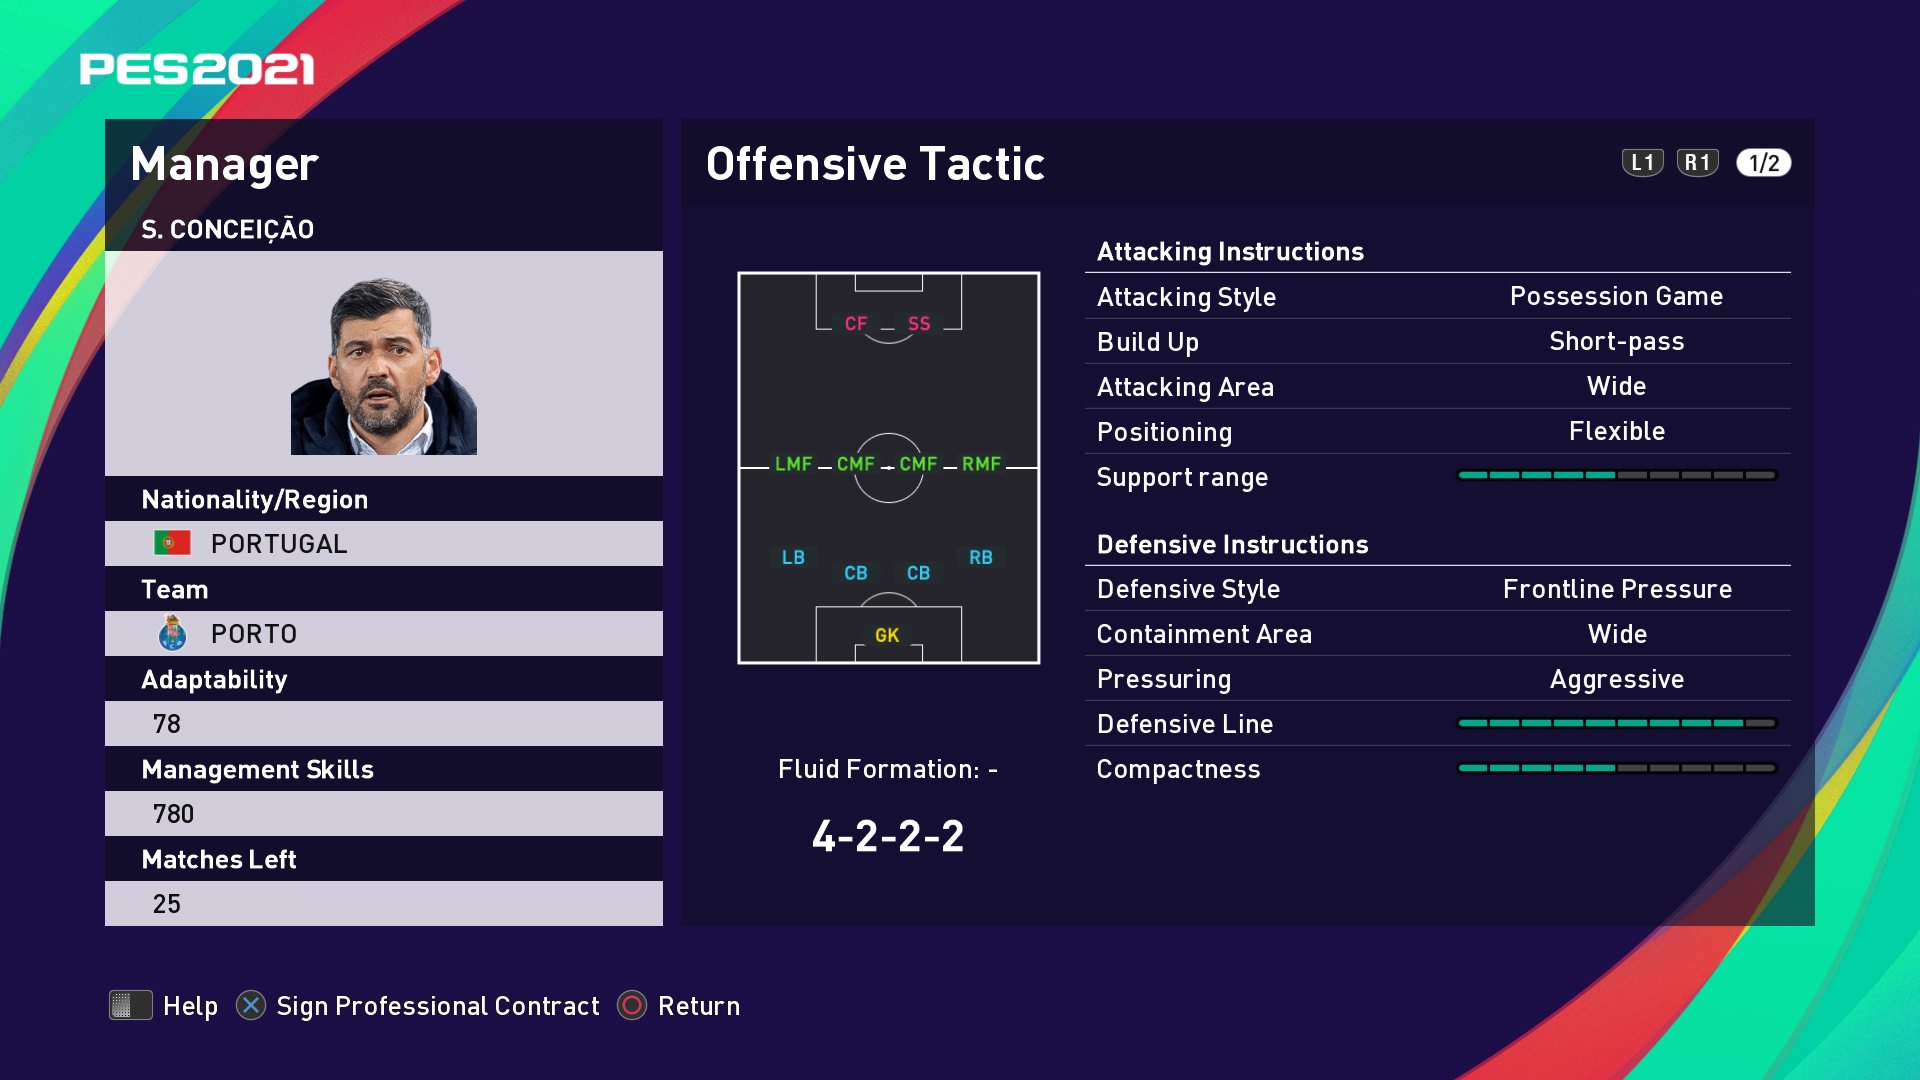 S. Conceição (Sérgio Conceição) Offensive Tactic in PES 2021 myClub